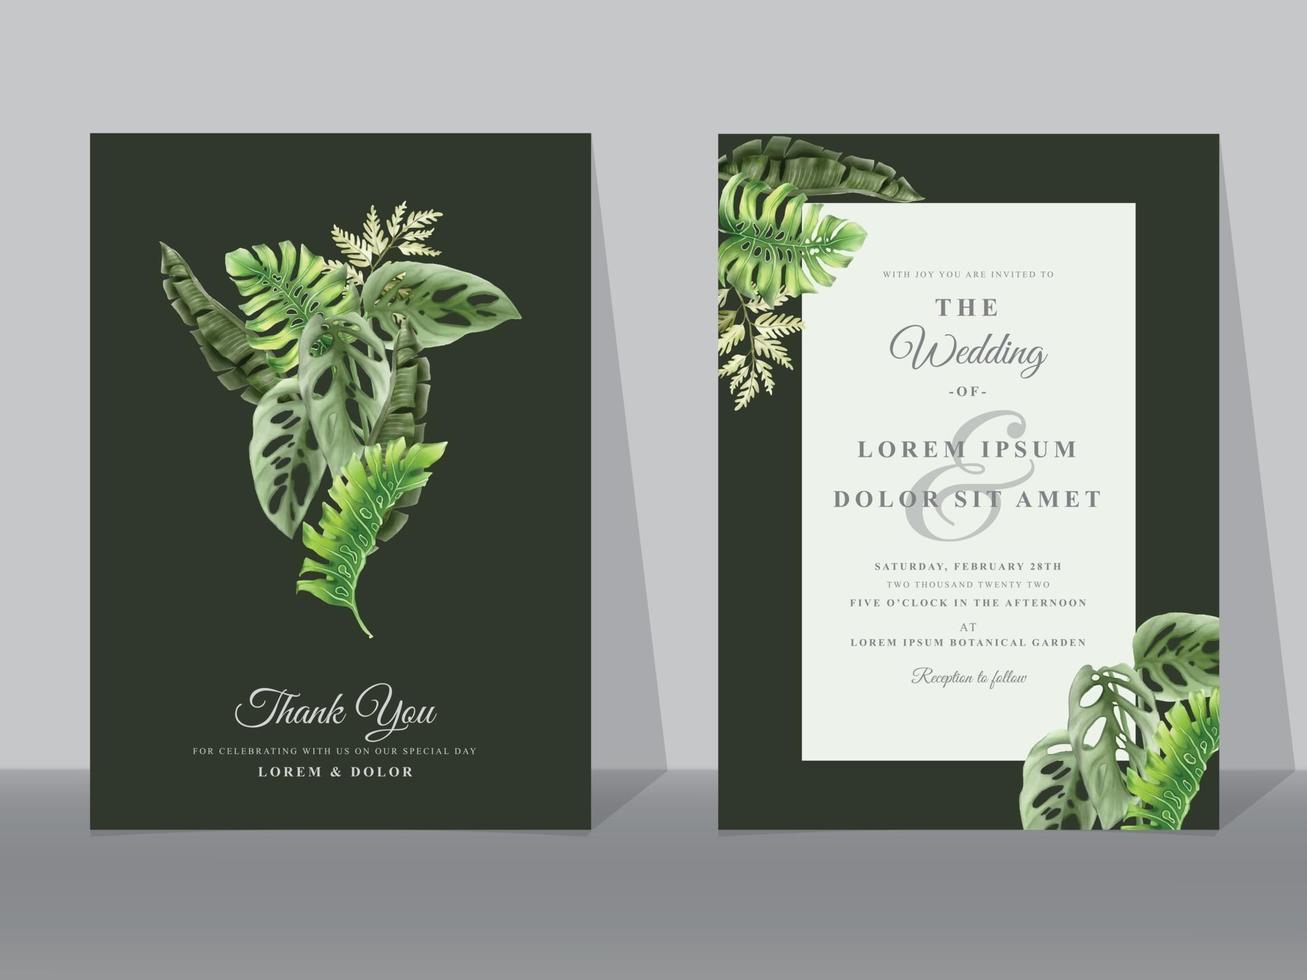 Hochzeitseinladungskarten mit grünen tropischen Blättern vektor